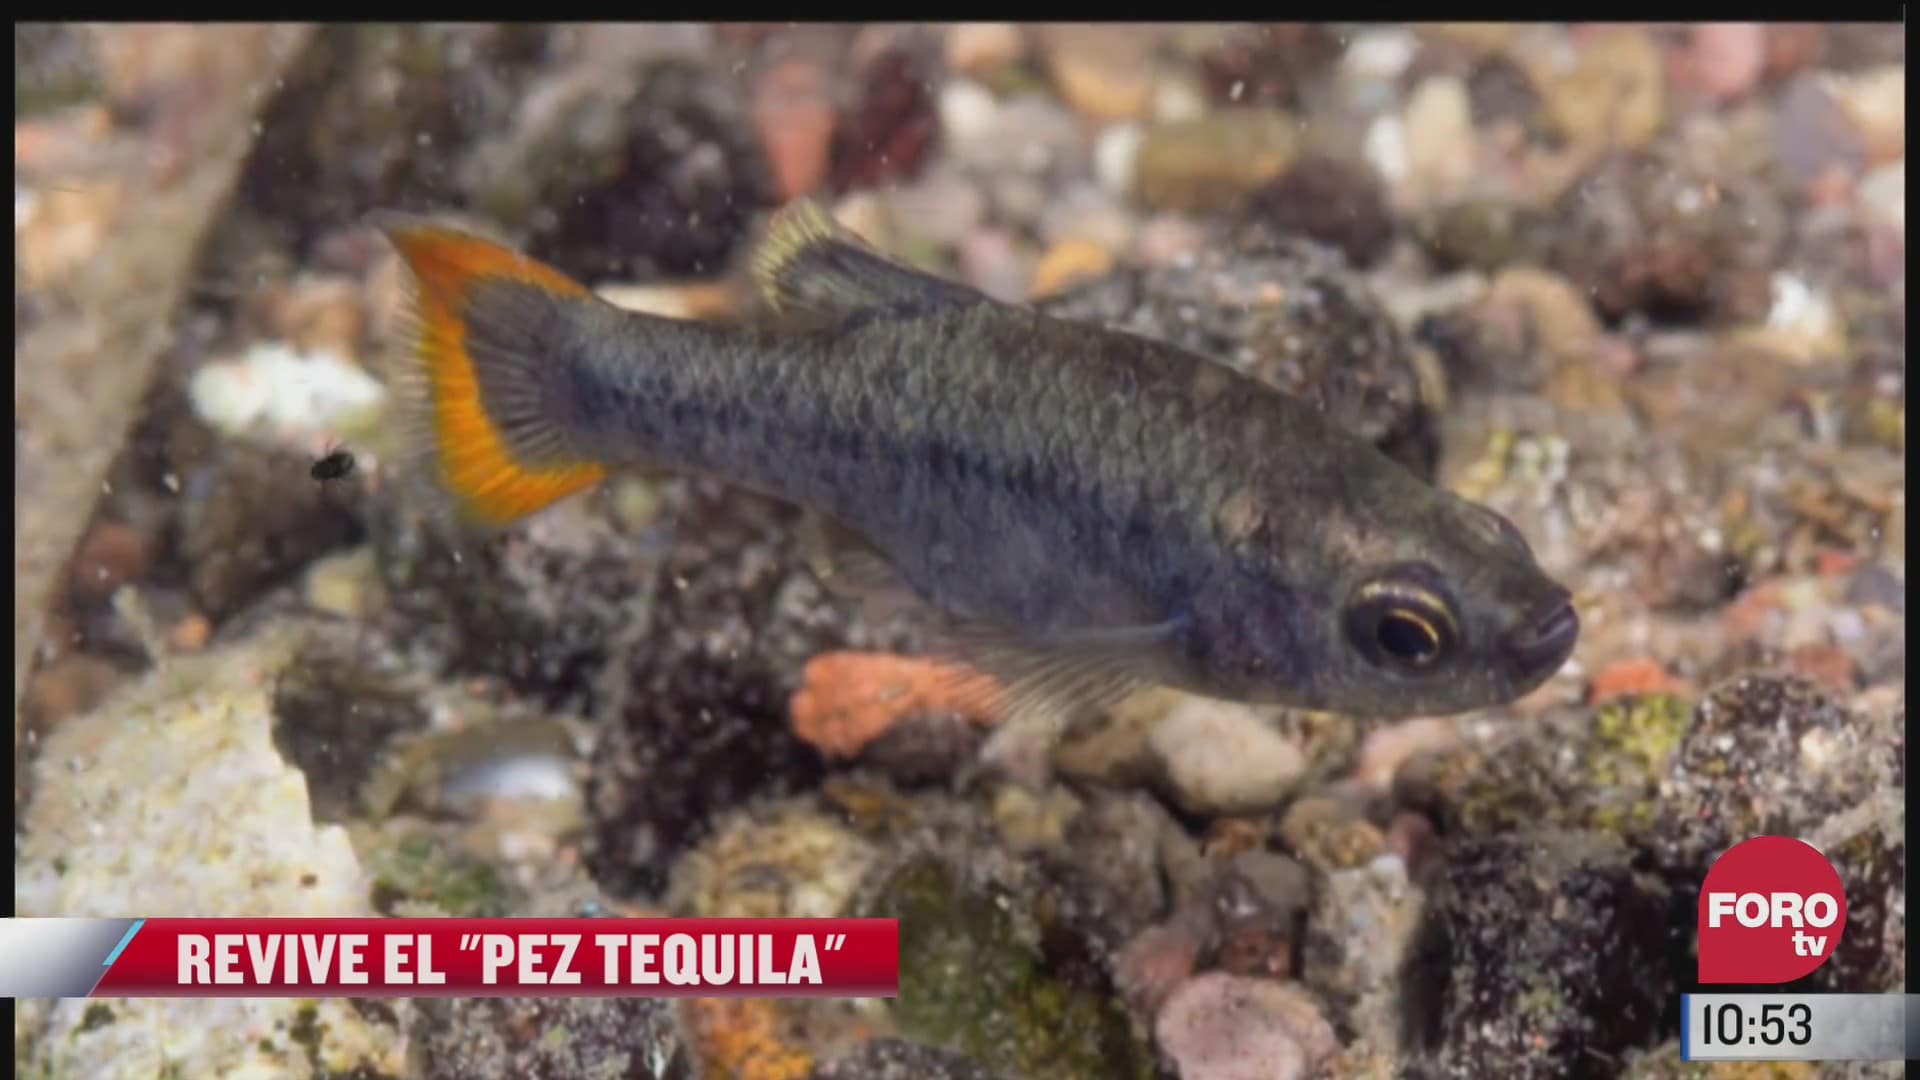 Pepenando Basura: científicos reviven al pez tequila